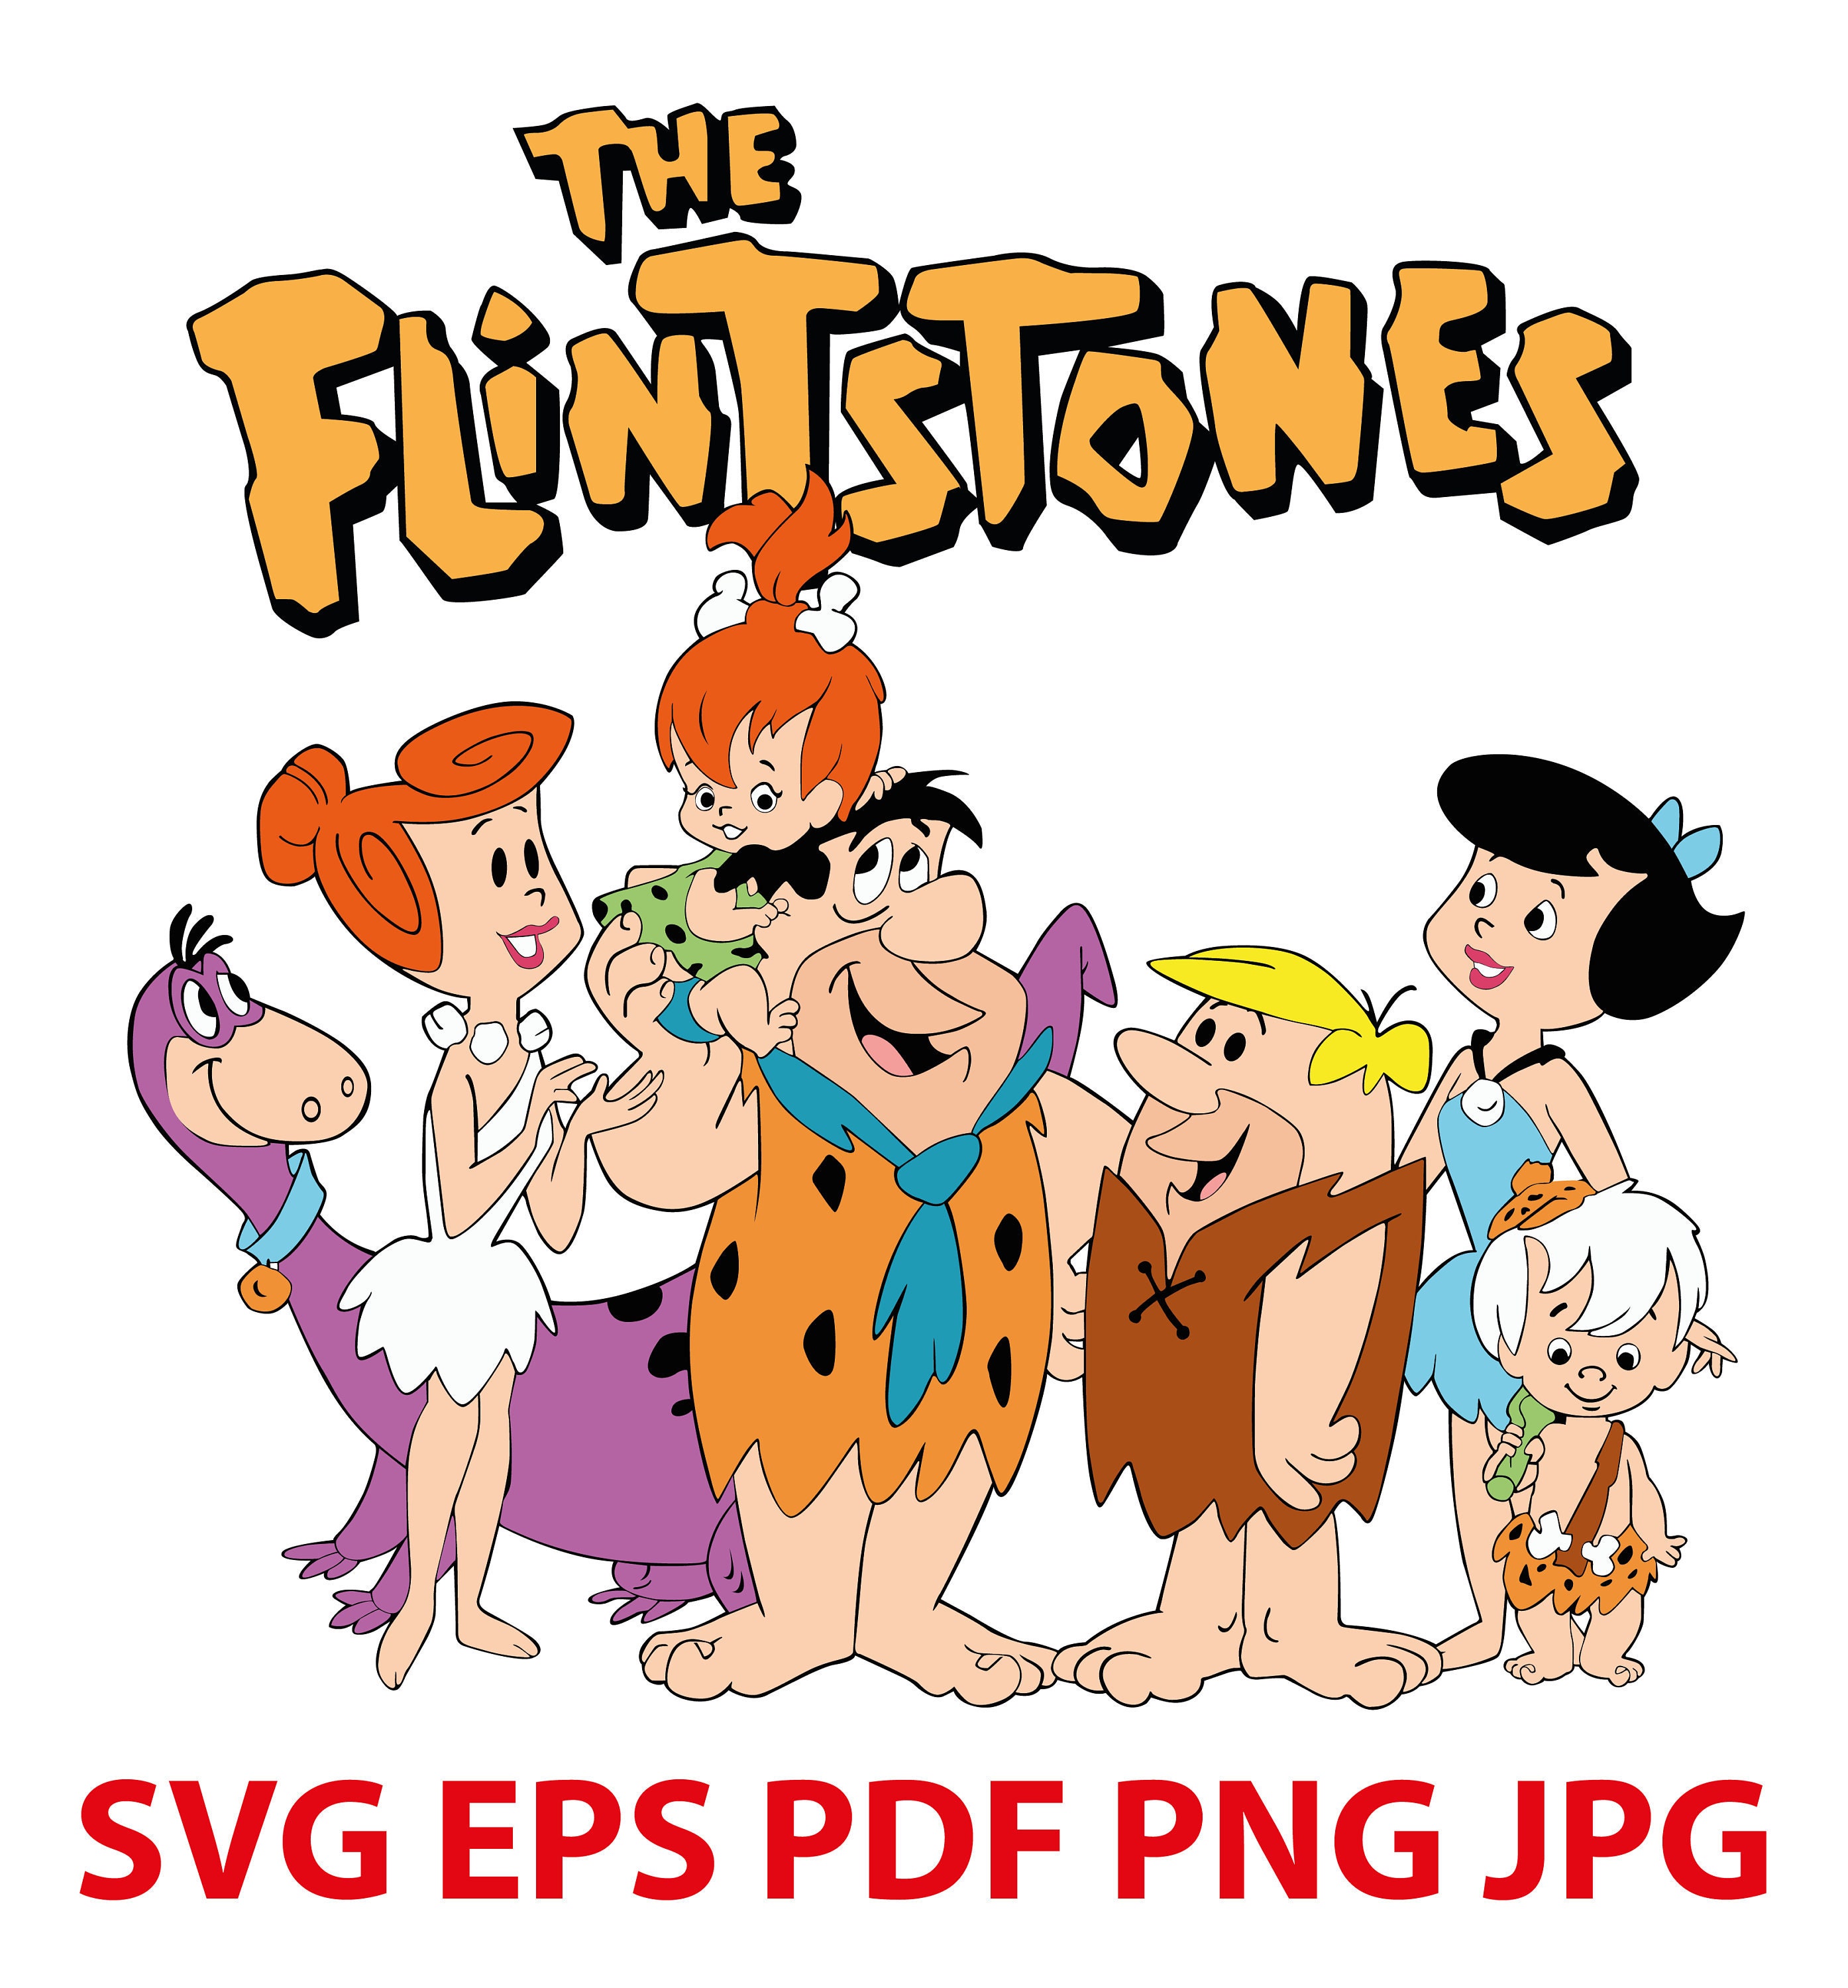 Disney Svg The Flintstones Clipart Disney Cut Files Svg Eps | Images ...